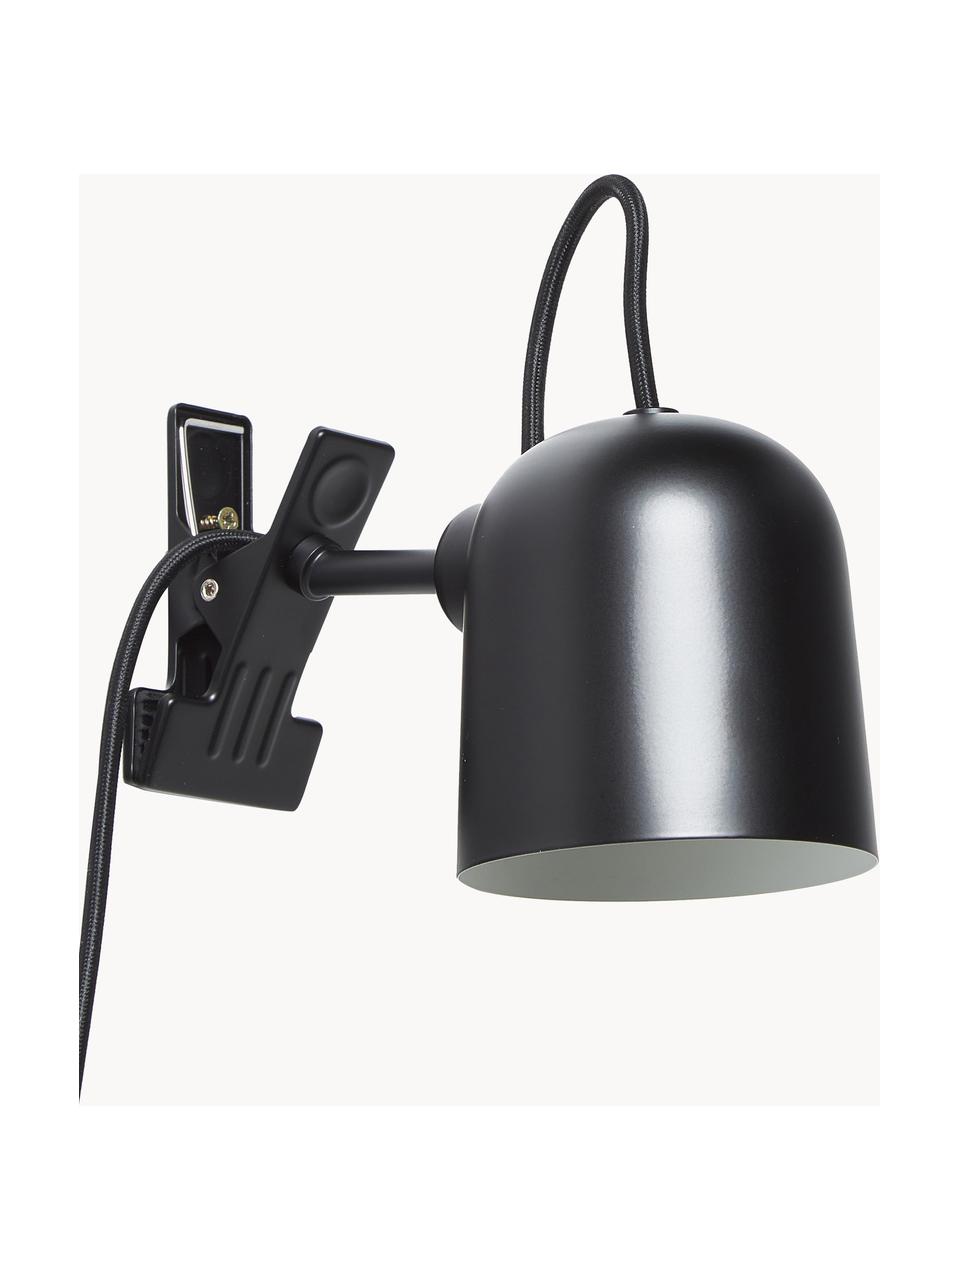 Lámpara de escritorio Angle, Lámpara: metal con pintura en polv, Cable: cubierto en tela, Negro, Ø 10 x Al 12 cm